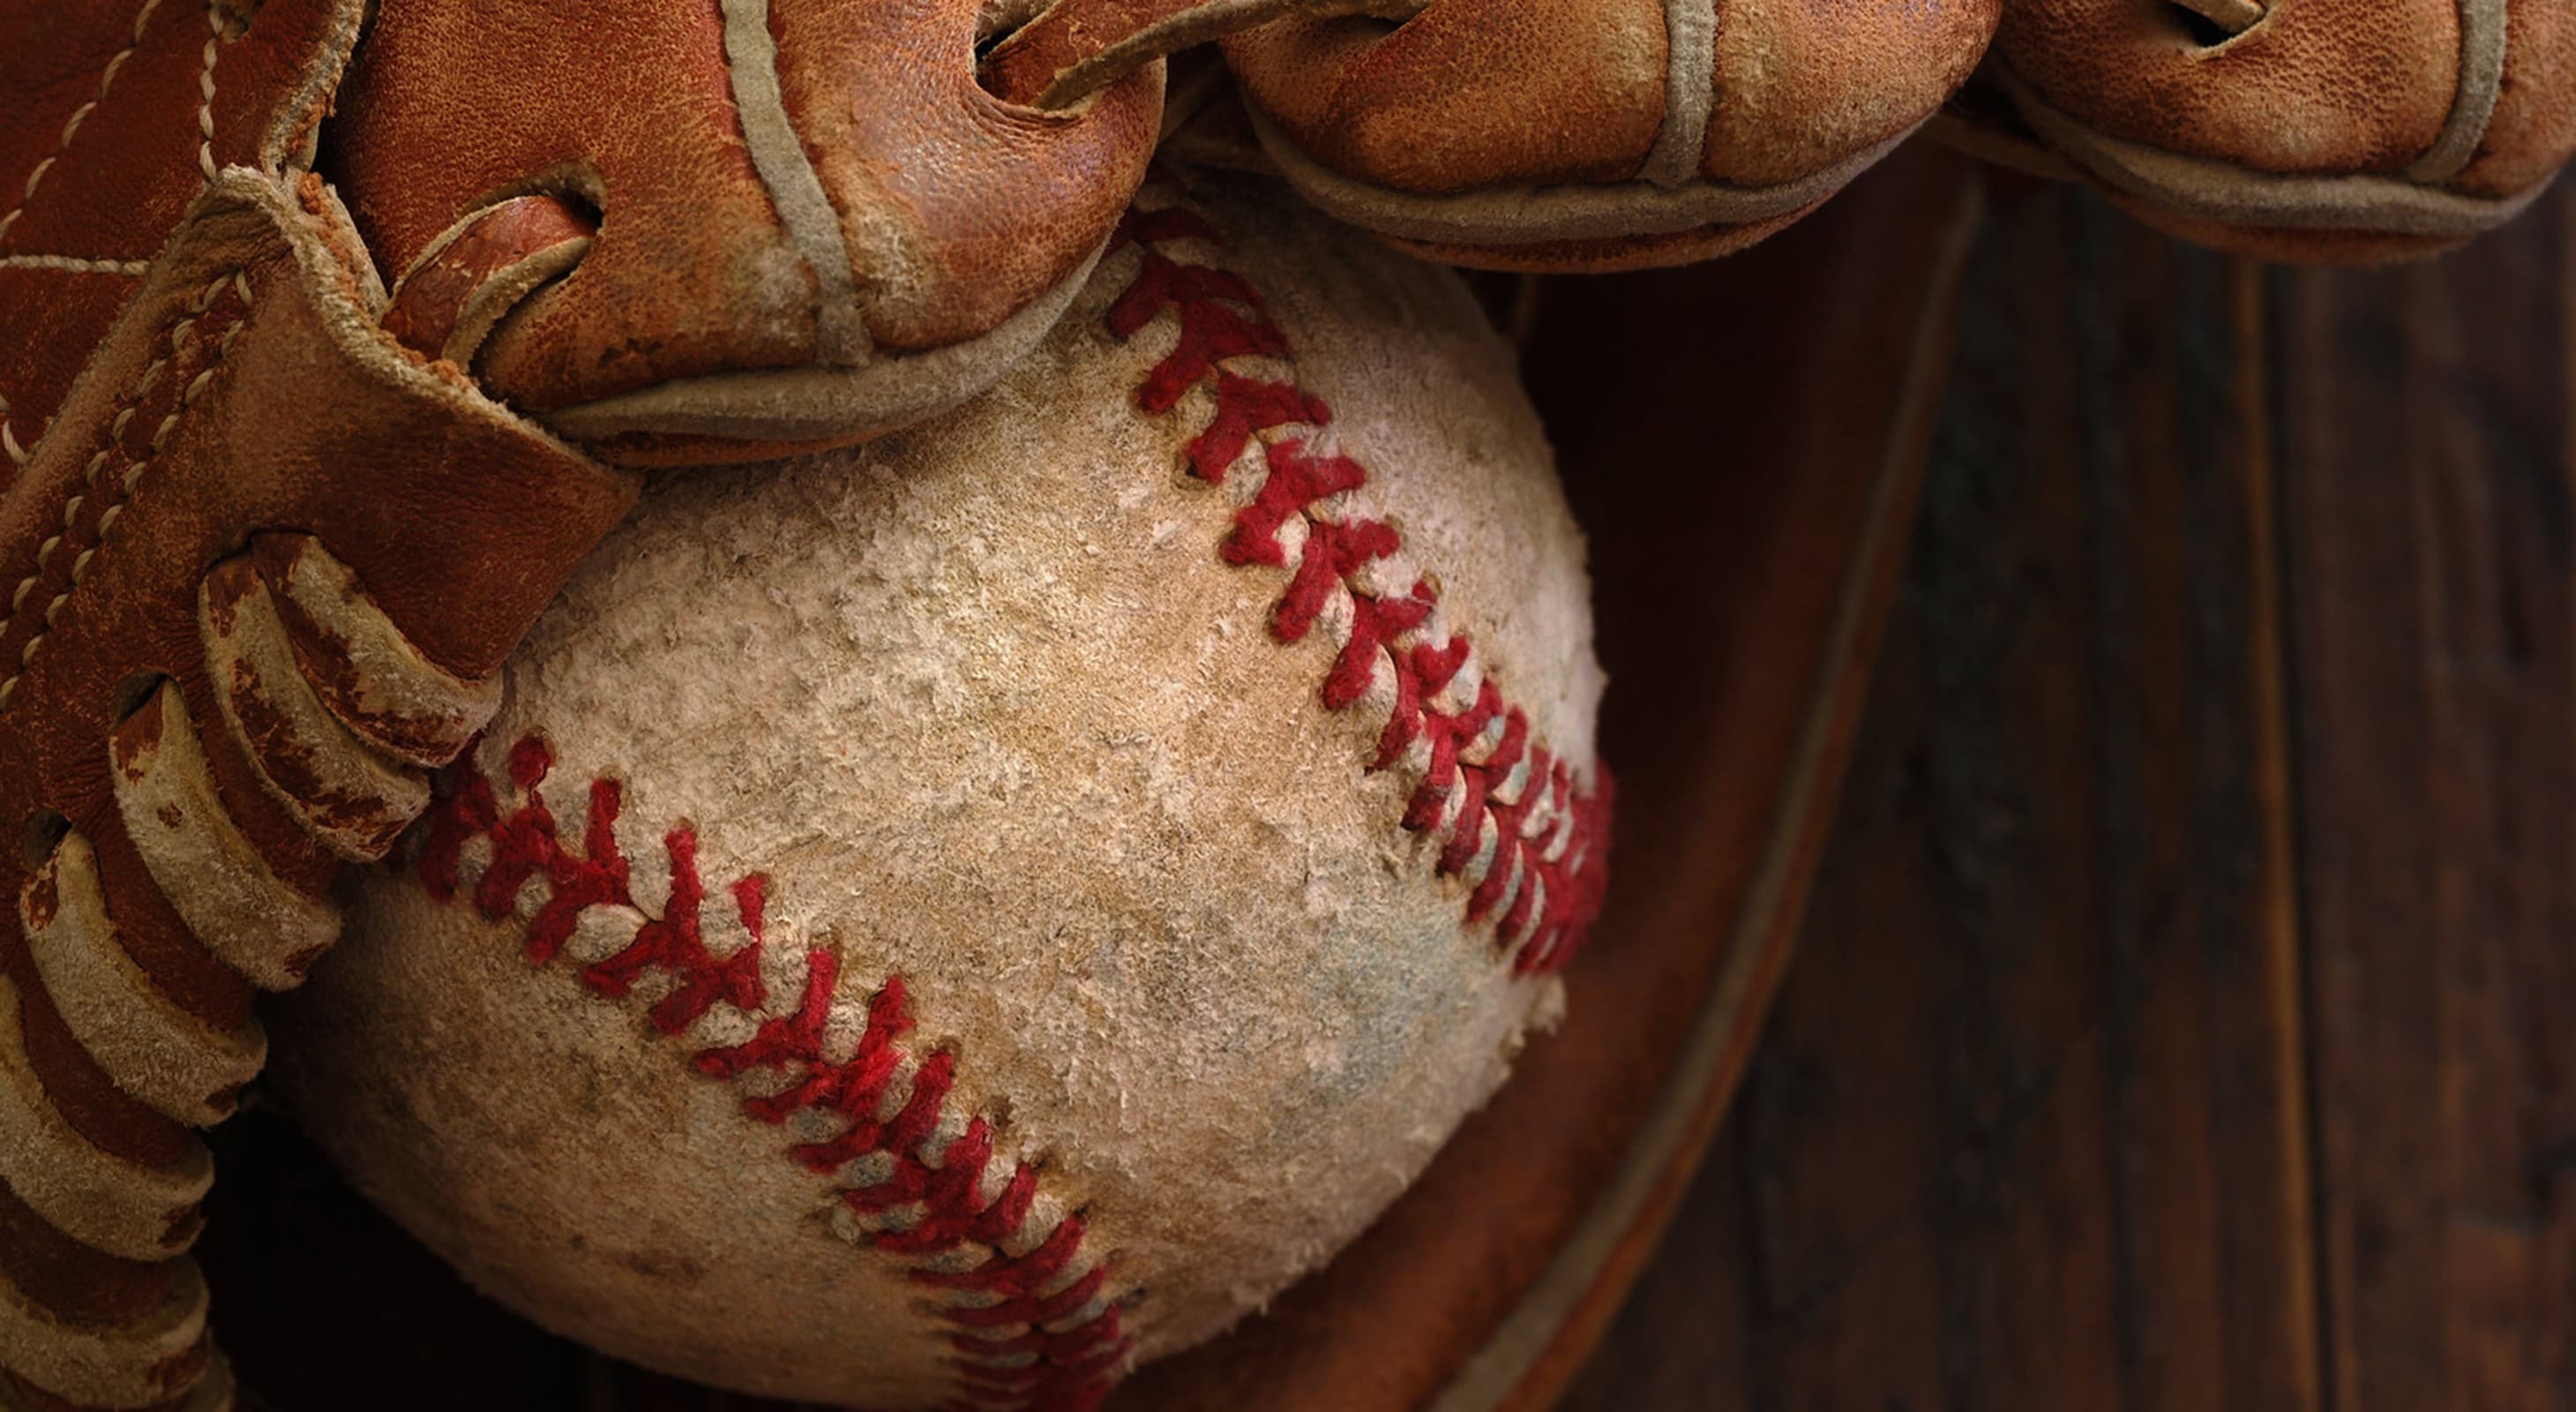 worn baseball in a glove